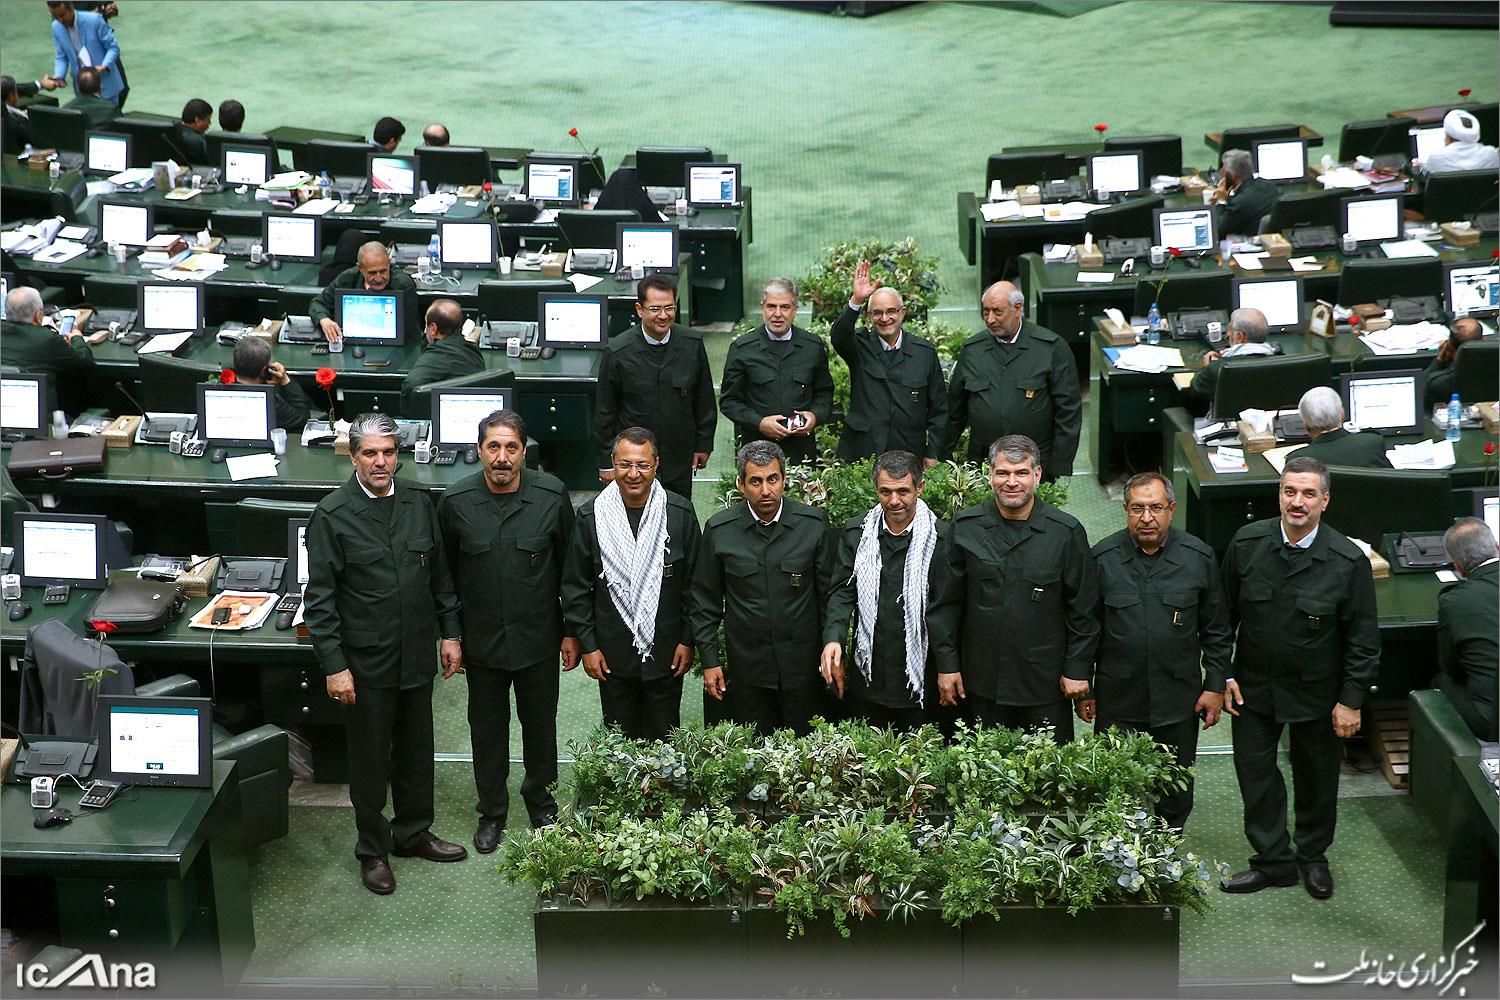 تصاویری از نمایندگان با لباس سپاه پاسداران در صحن علنی مجلس